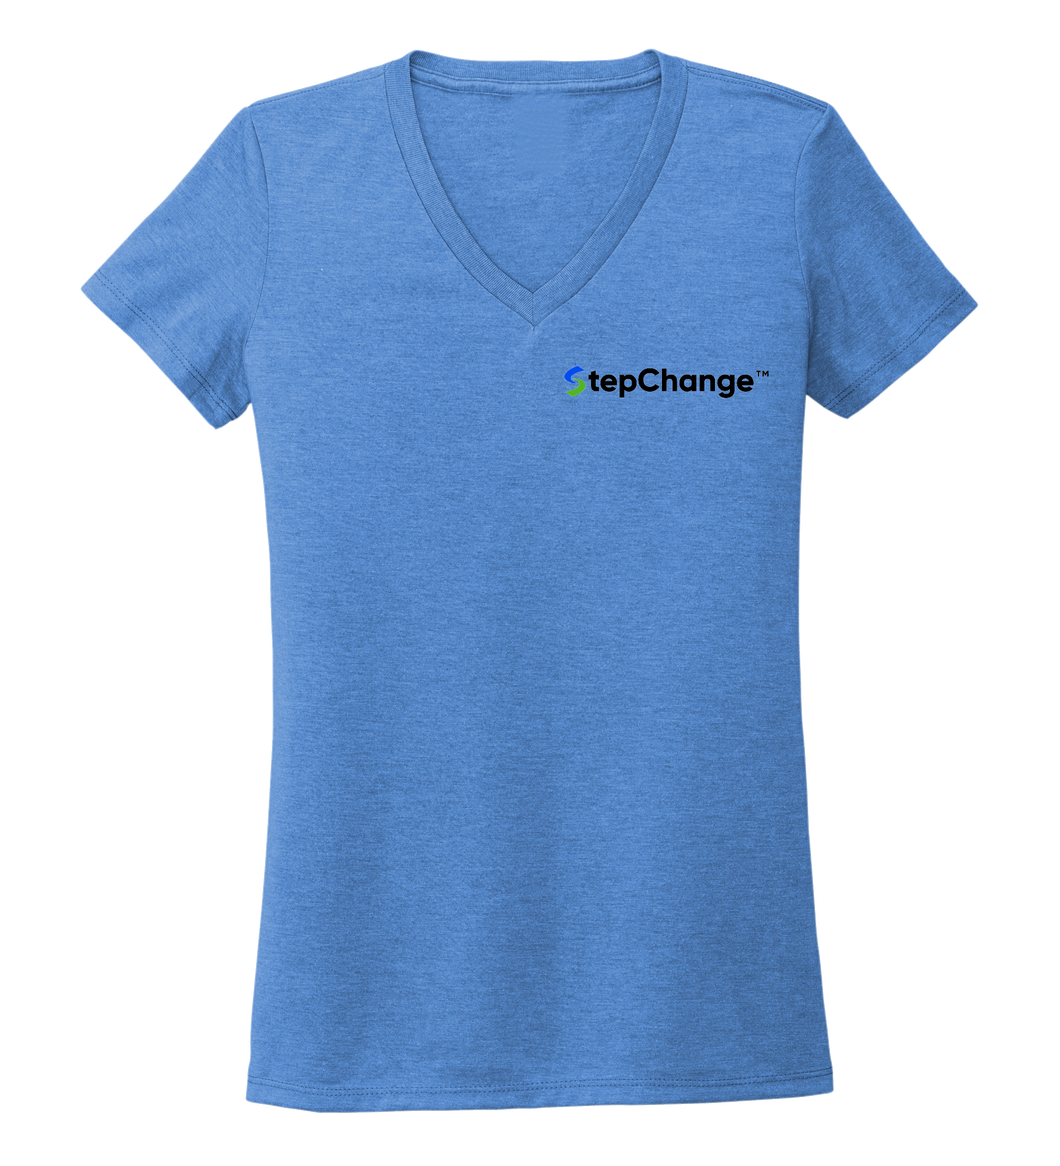 StepChange Women's V-neck T-shirt in Sky Blue